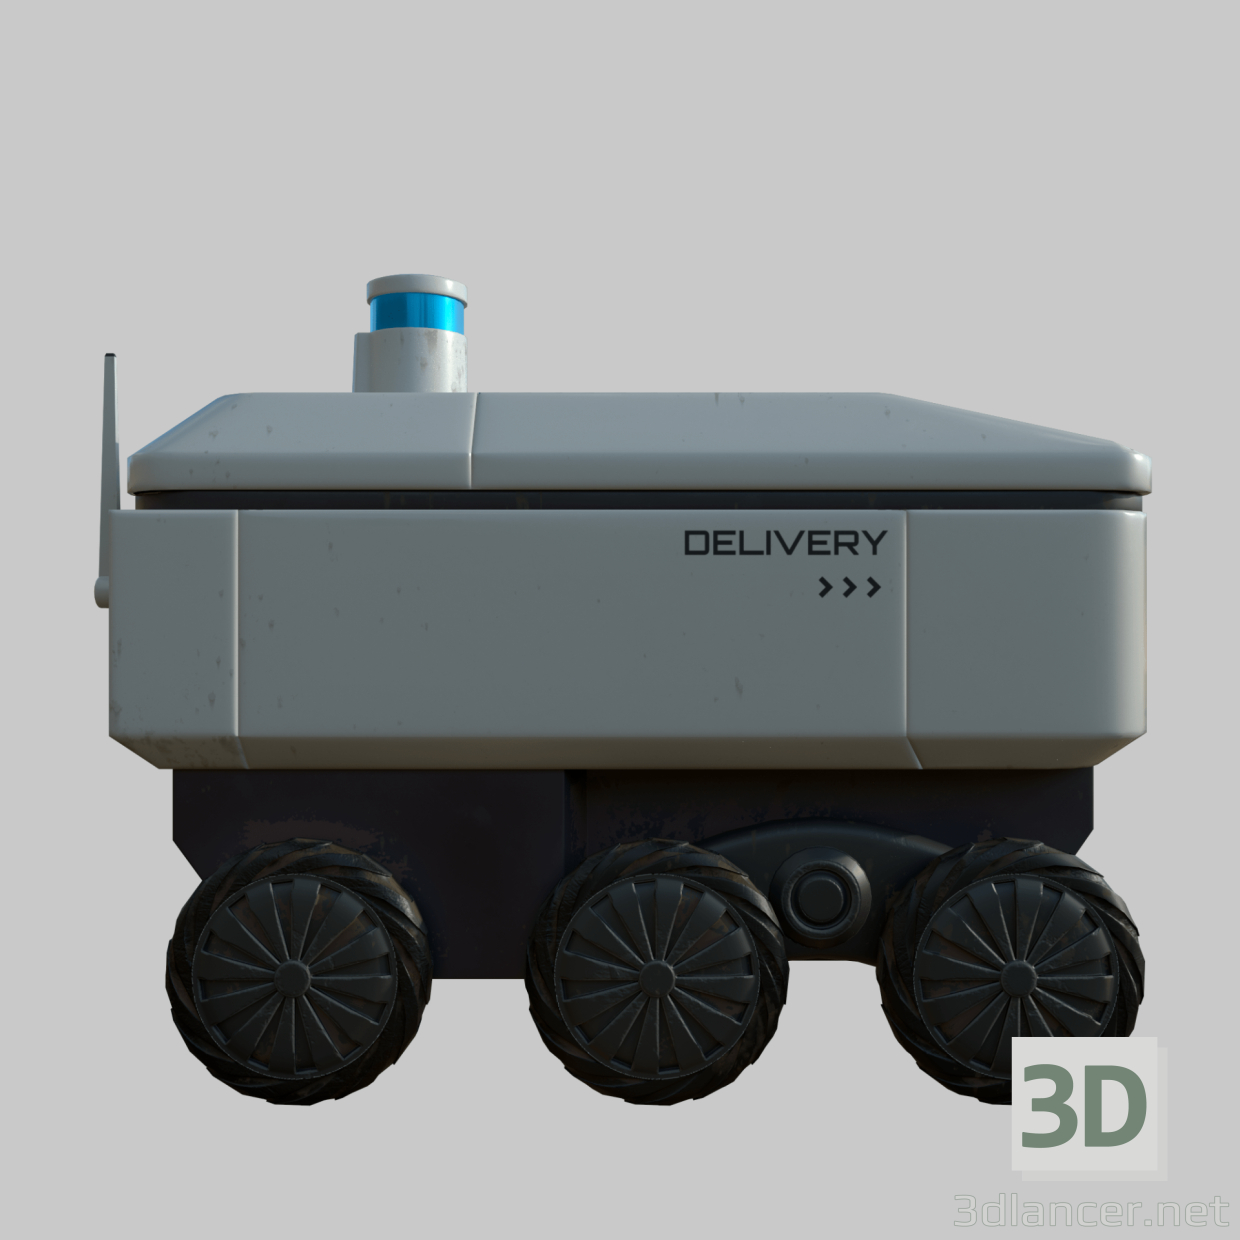 3d delivery robot model buy - render